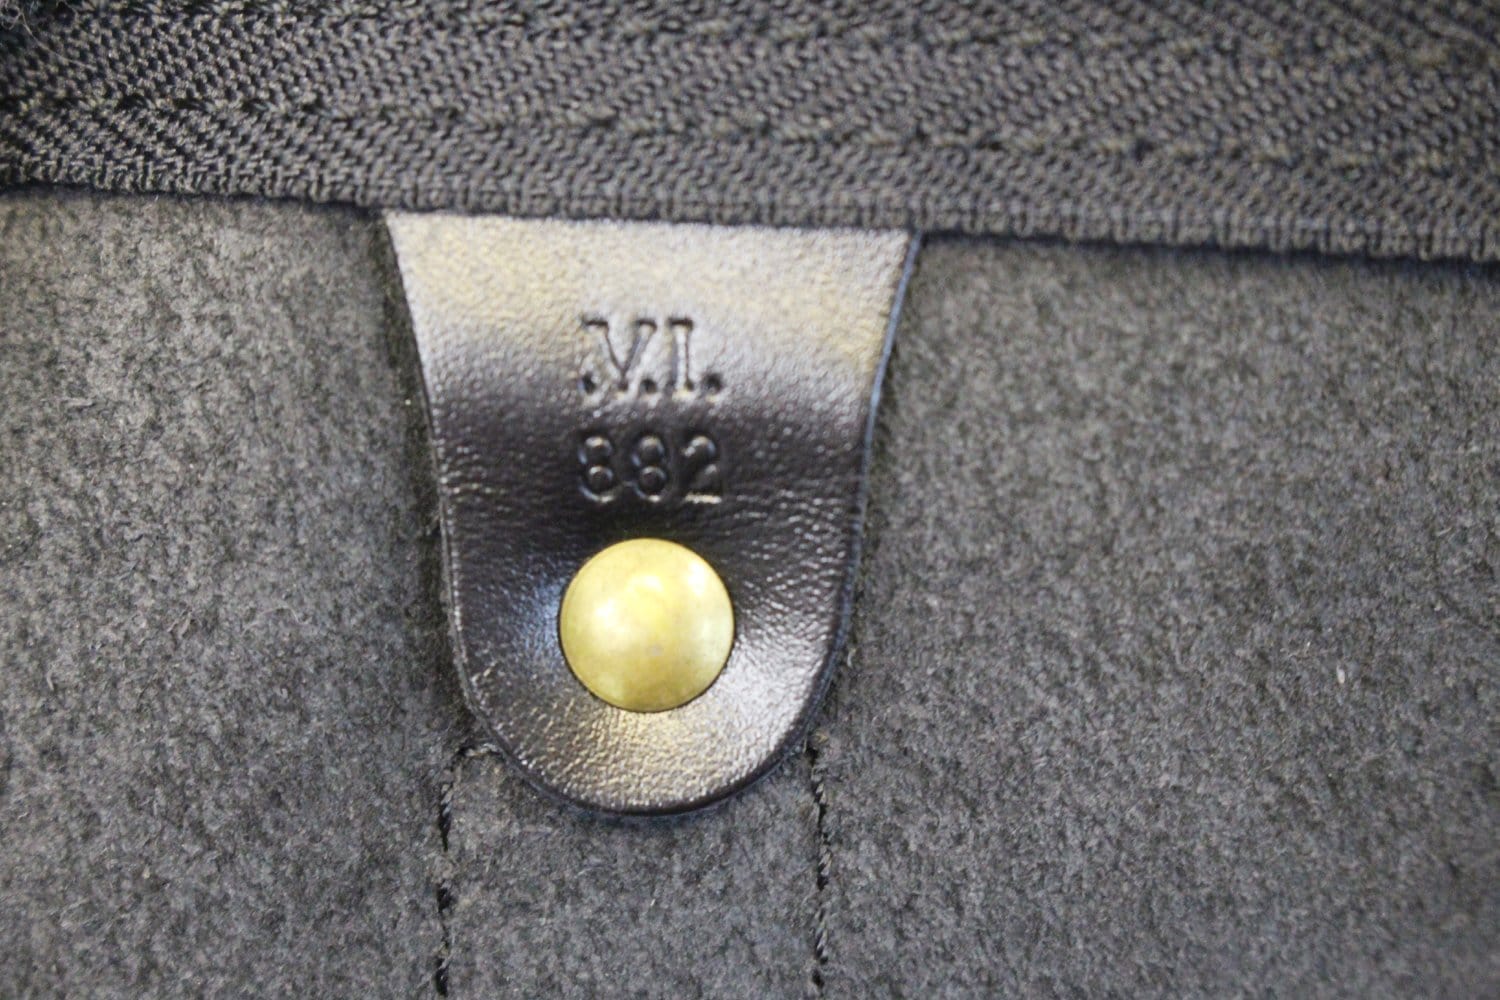 Louis Vuitton Keepall Bag Epi Leather 60